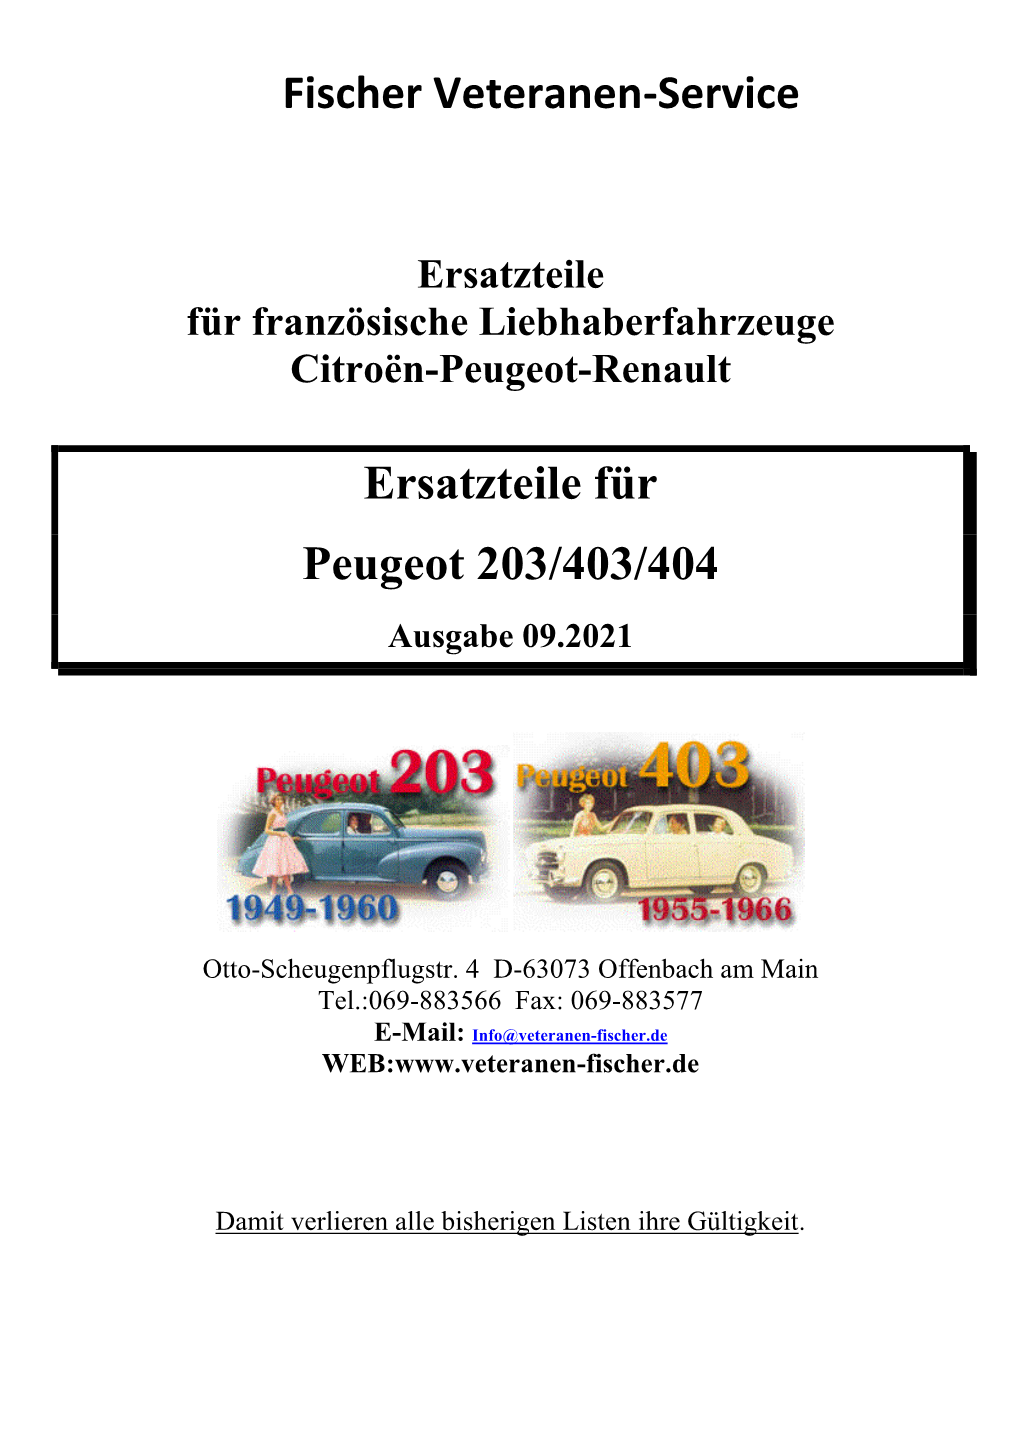 Fischer Veteranen-Service Ersatzteile Für Peugeot 203/403/404